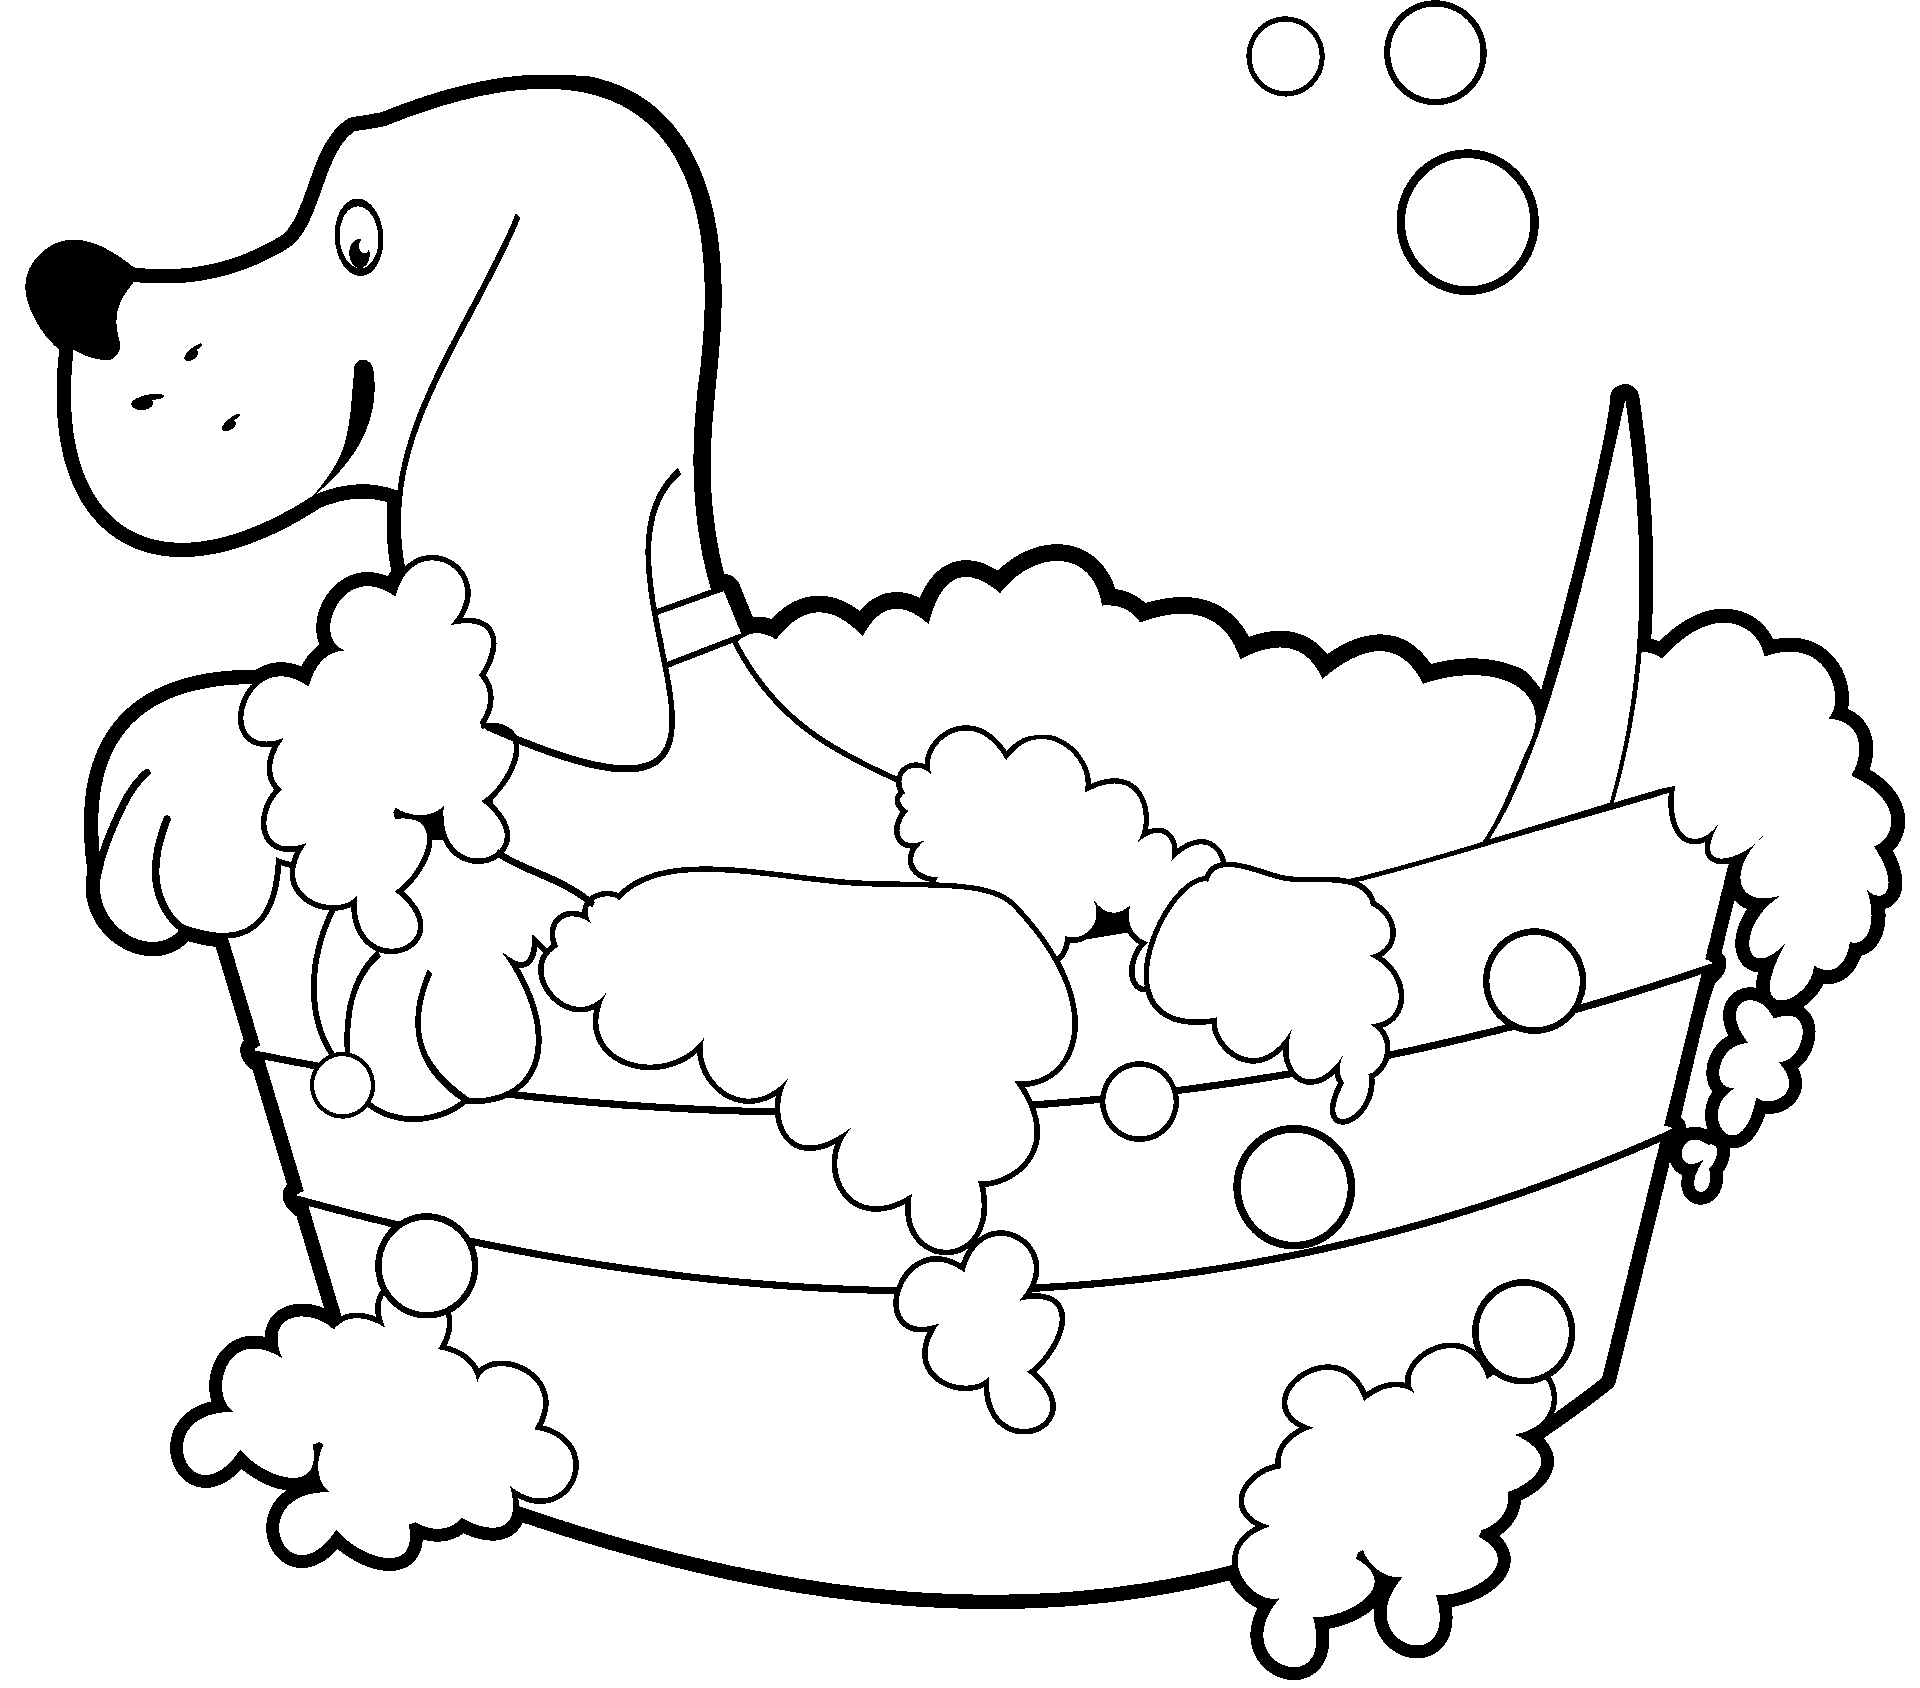 Disegno da colorare di cane che fa il bagnetto nella tinozza